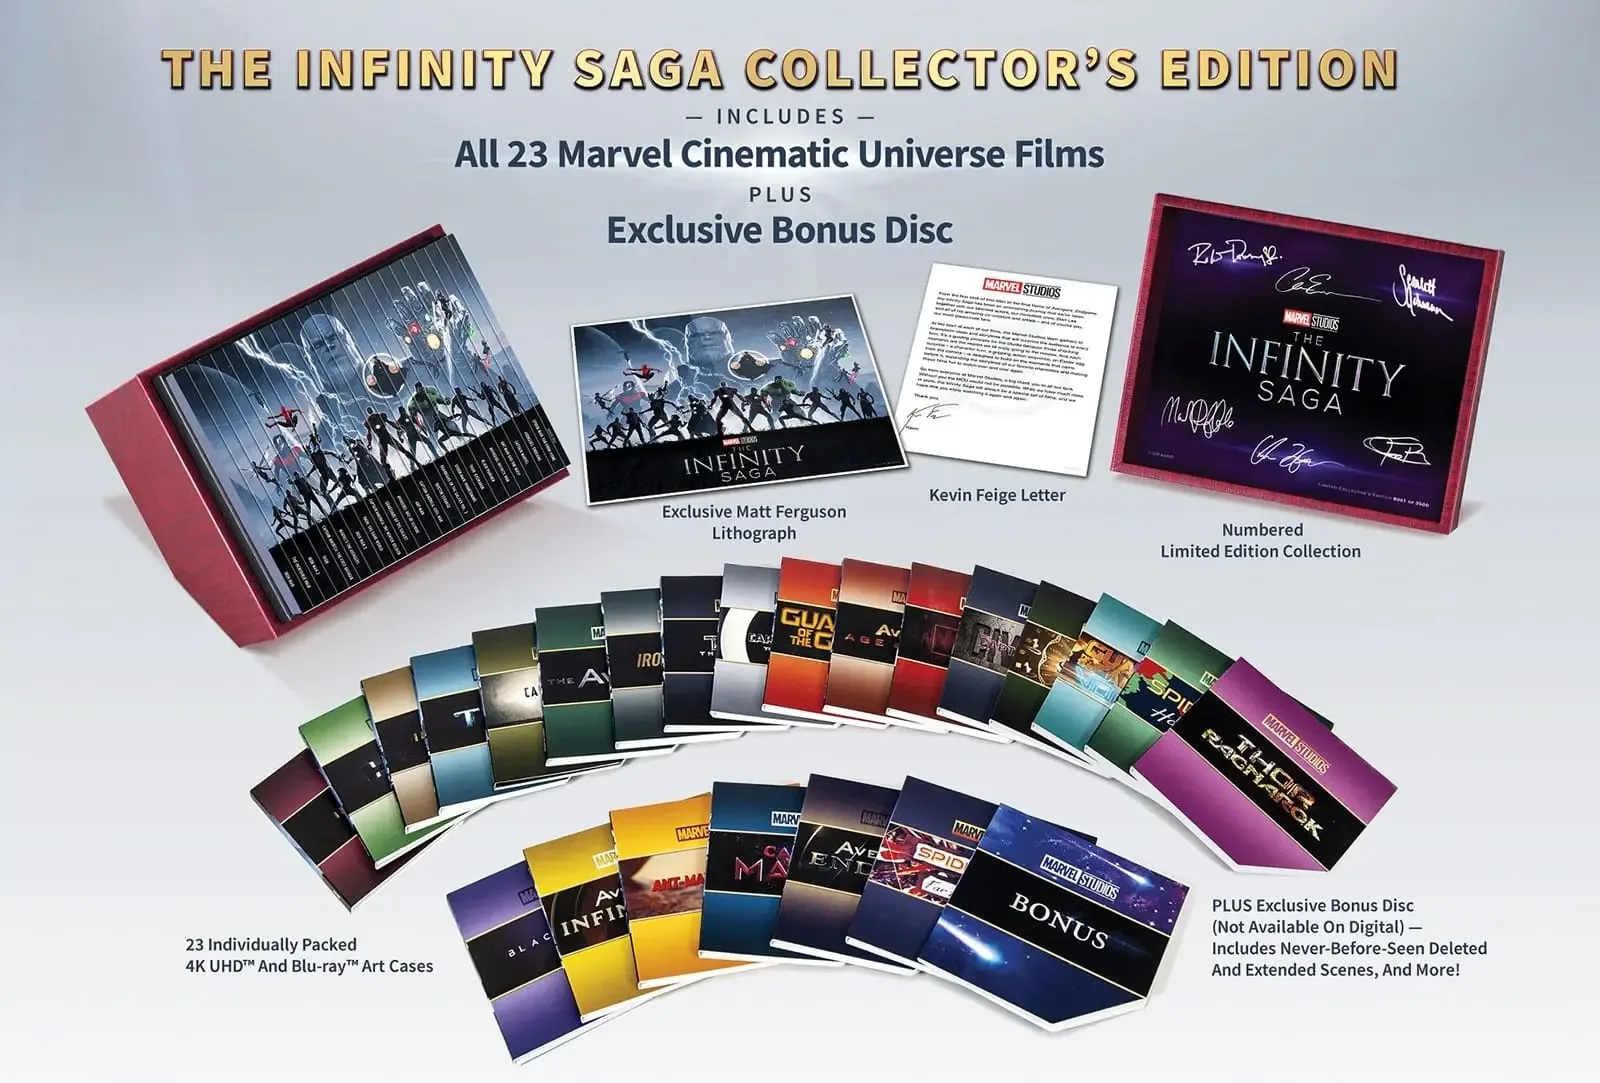 The Infinity Saga Collector's Edition